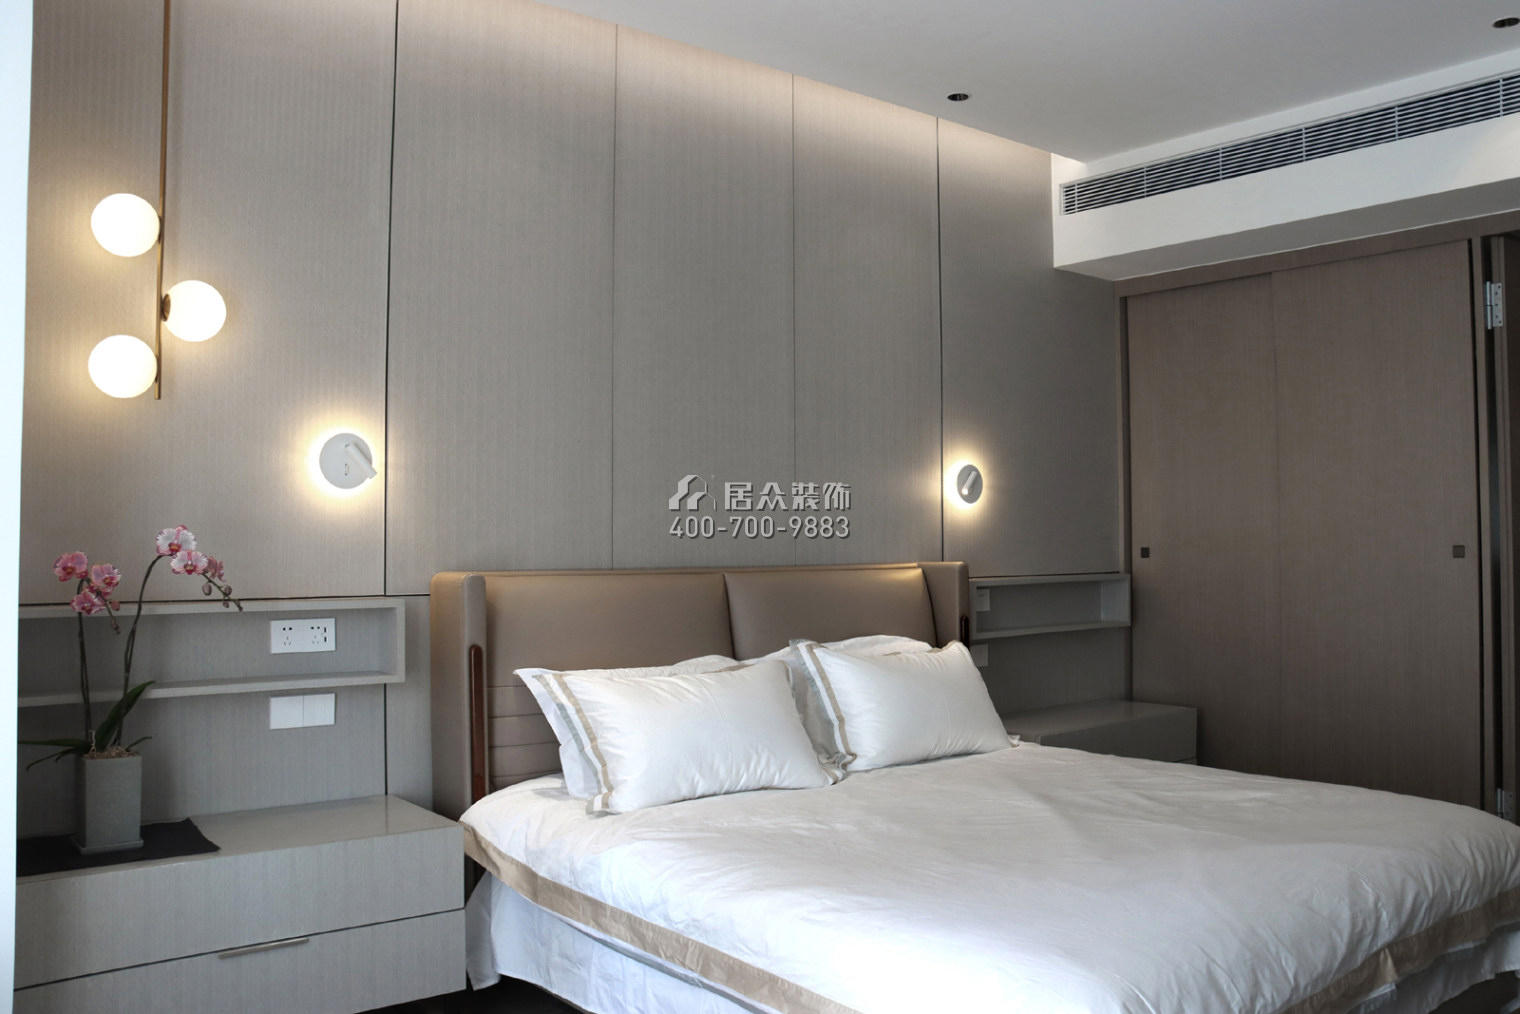 華潤城潤府二期206平方米現代簡約風格平層戶型臥室裝修效果圖